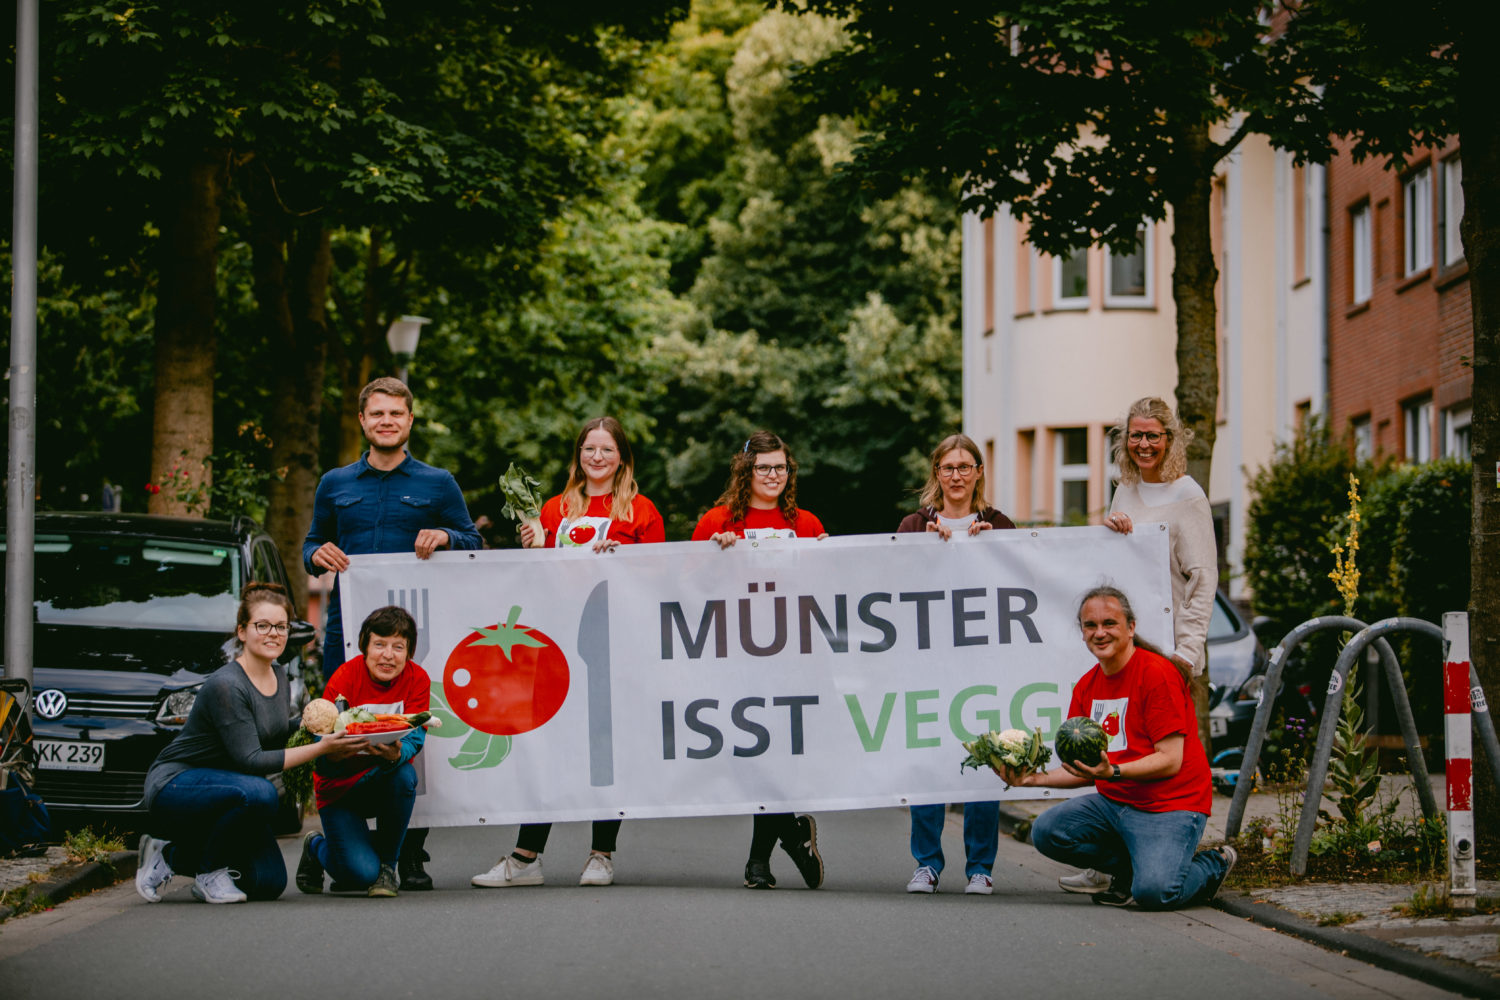 Münster ist veggie - Plakat zur Ankündigung. Foto: Stadt Münster / Kuiter.